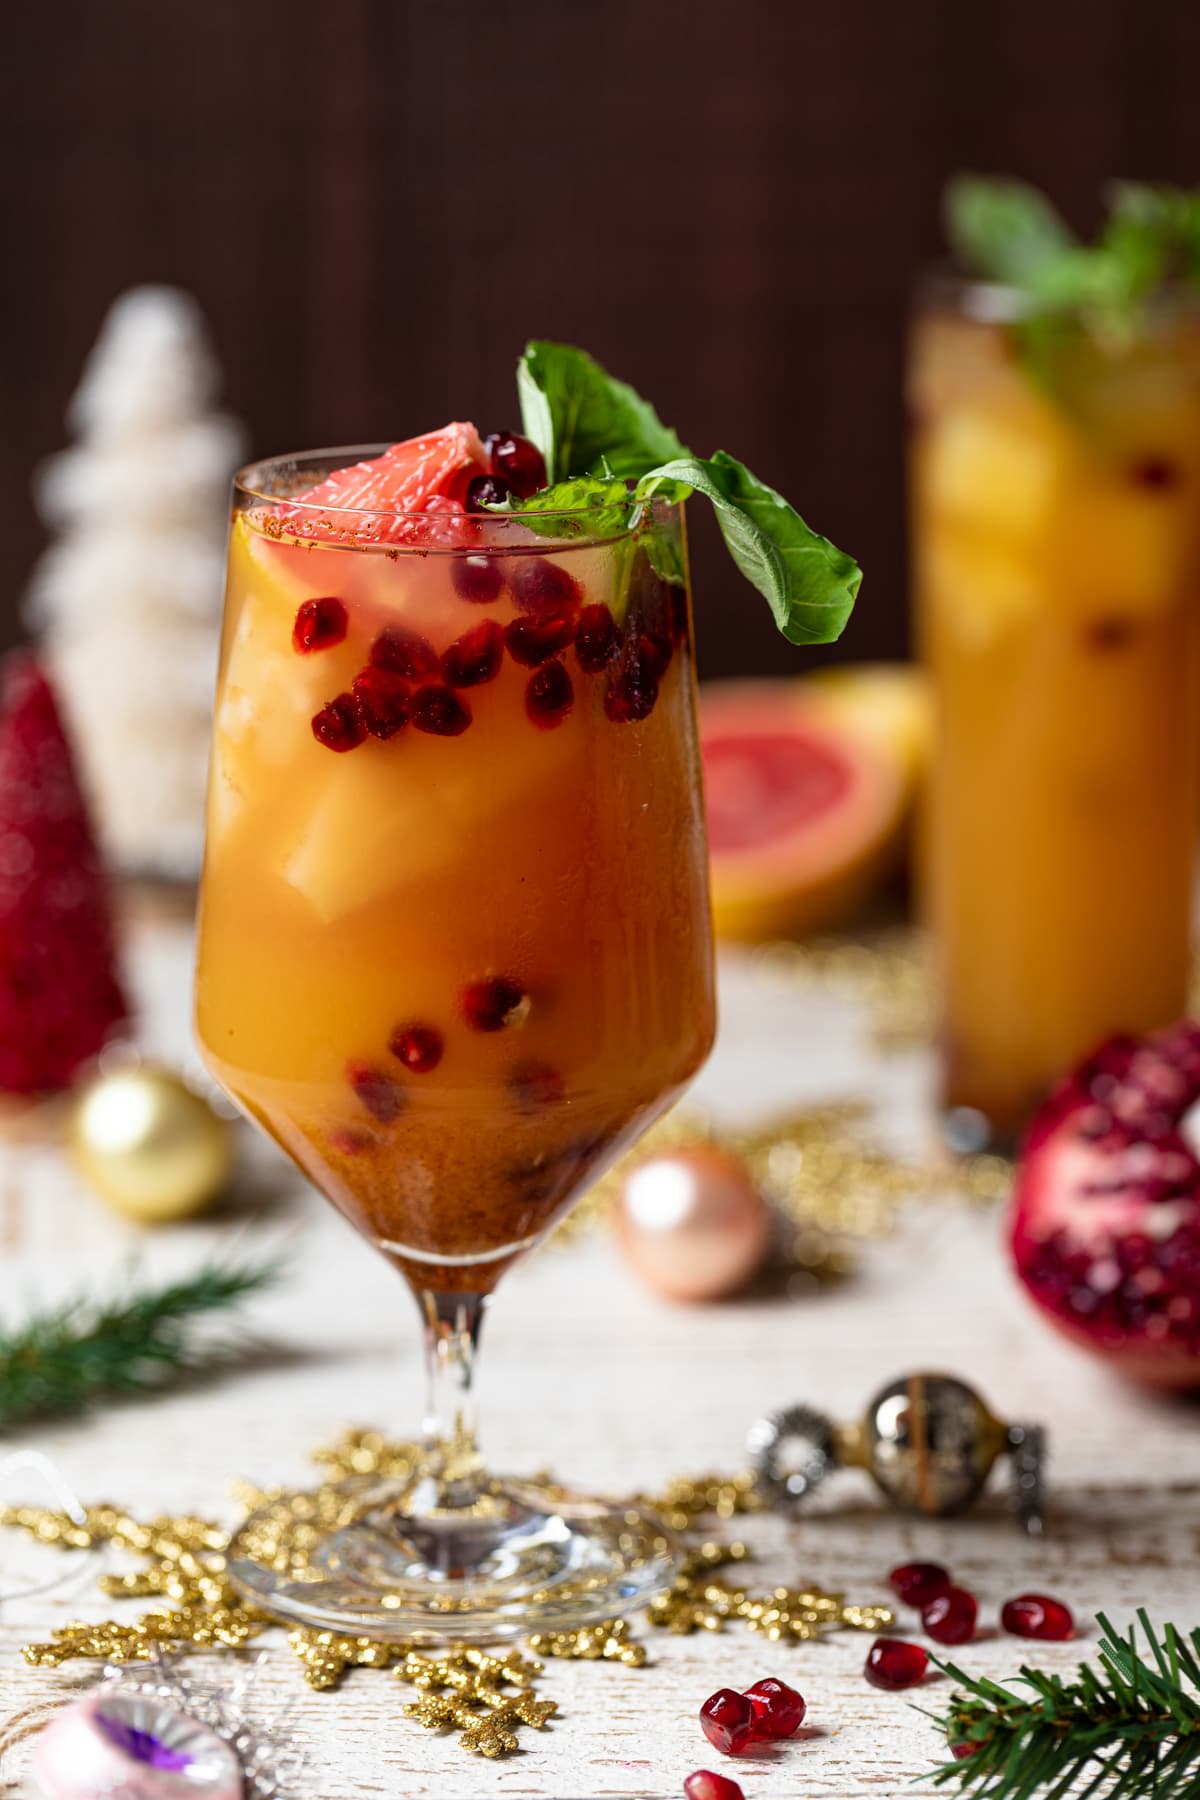 Honey Grapefruit Mocktail topped with pomegranate arils, grapefruit, and fresh basil